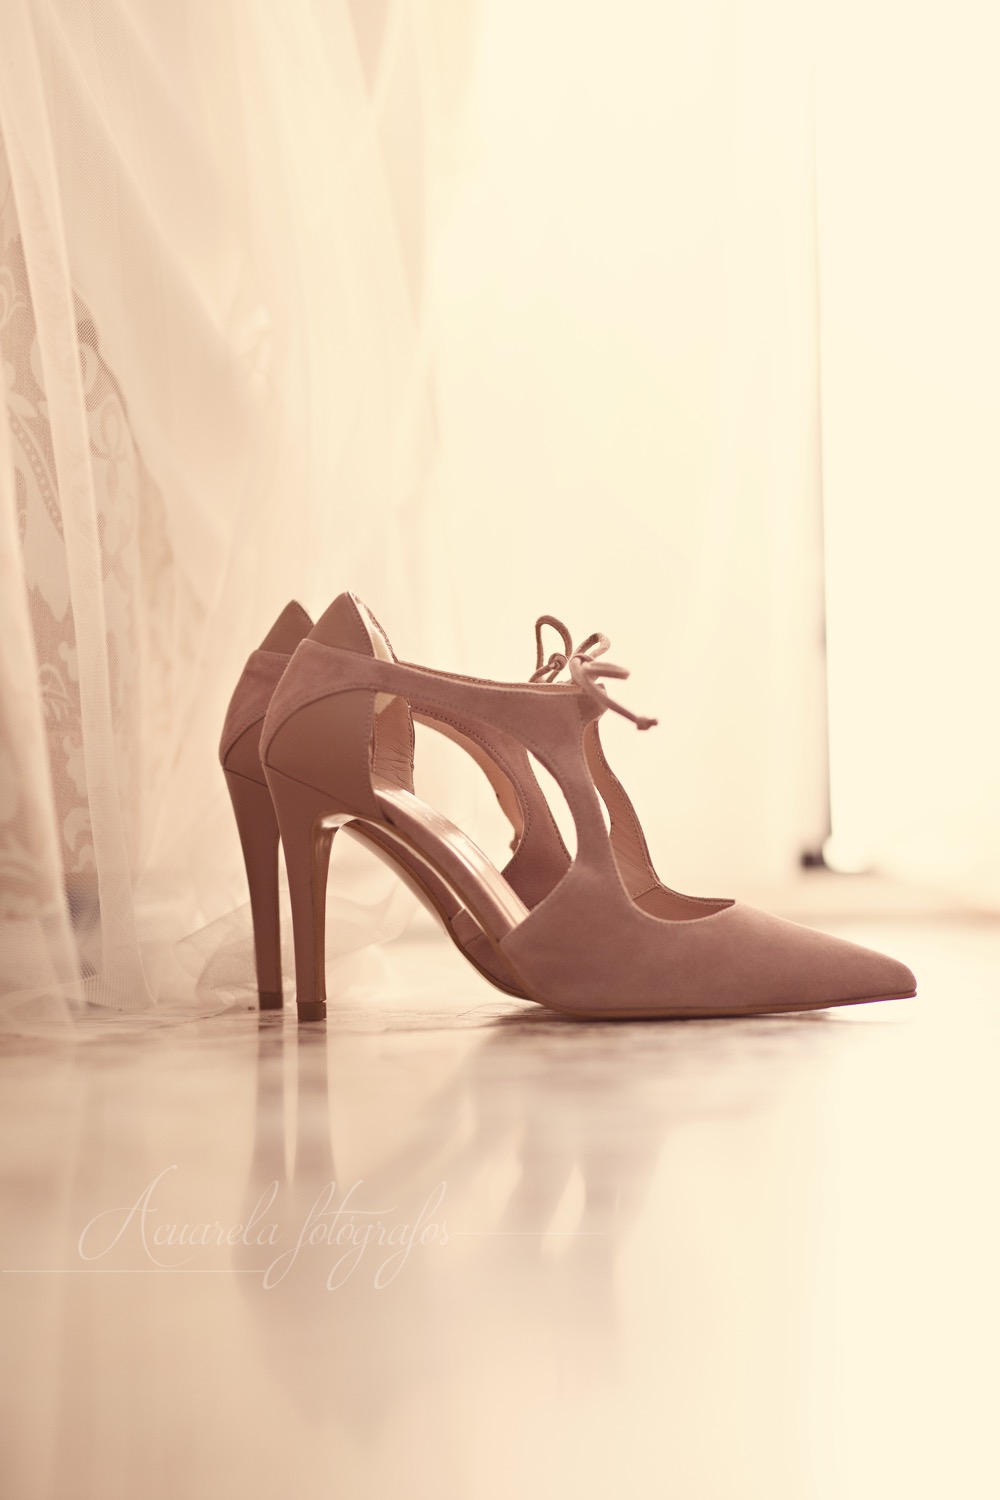 los zapatos de novia